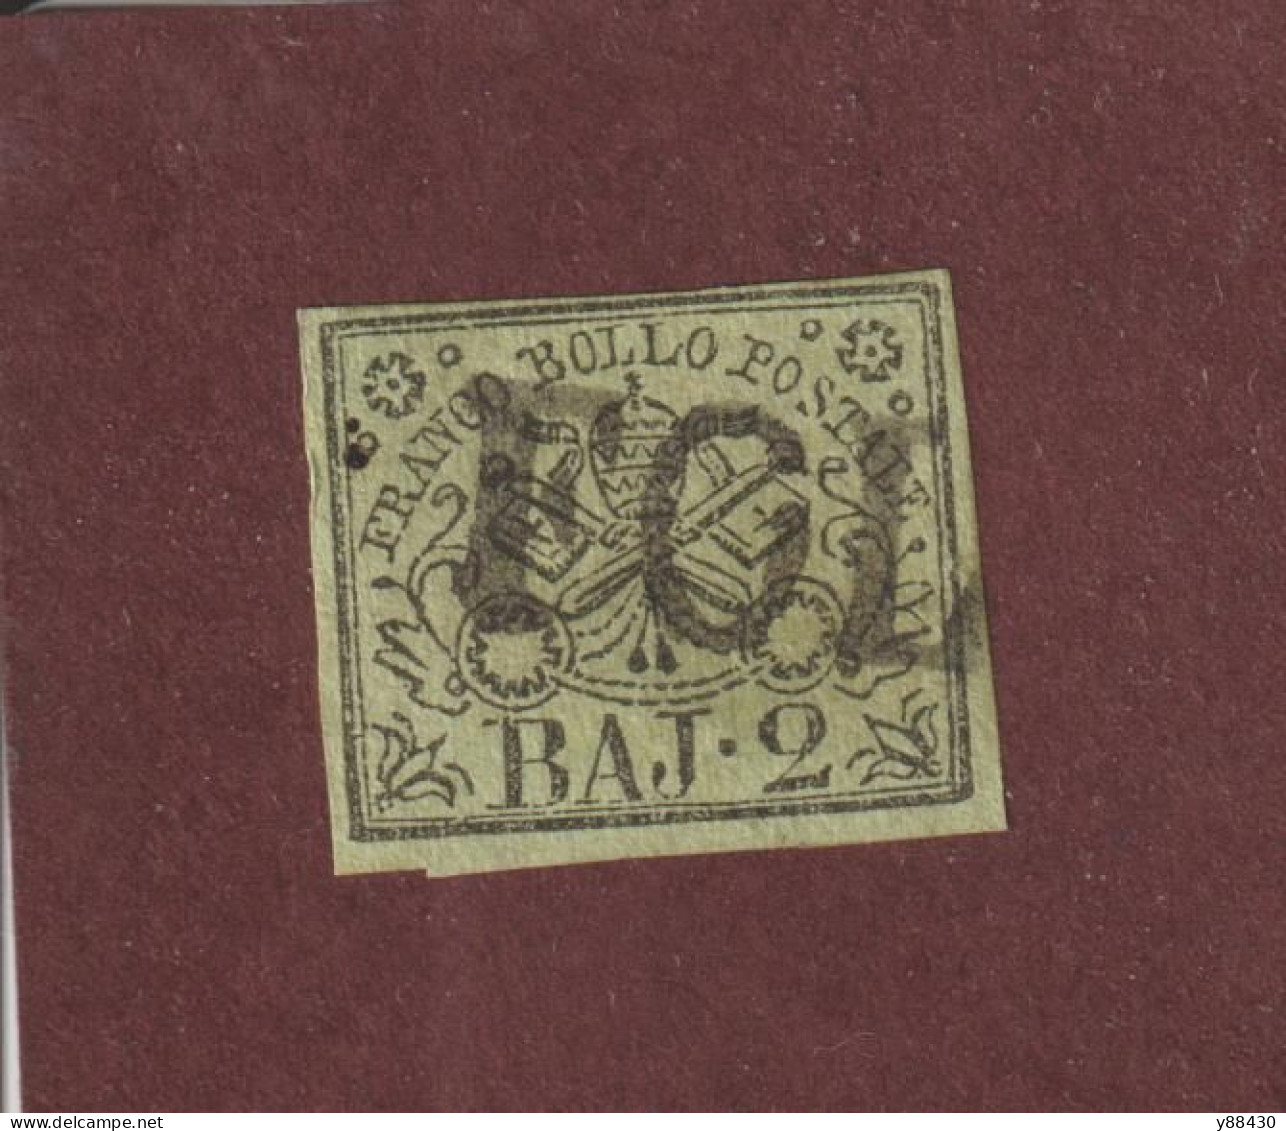 ITALIE - ÉTATS PONTIFICAUX - N° 3 De 1852 / 1864 - 1 Timbre Oblitéré  -  2.b. Vert/jaune - 2 Scann - Papal States